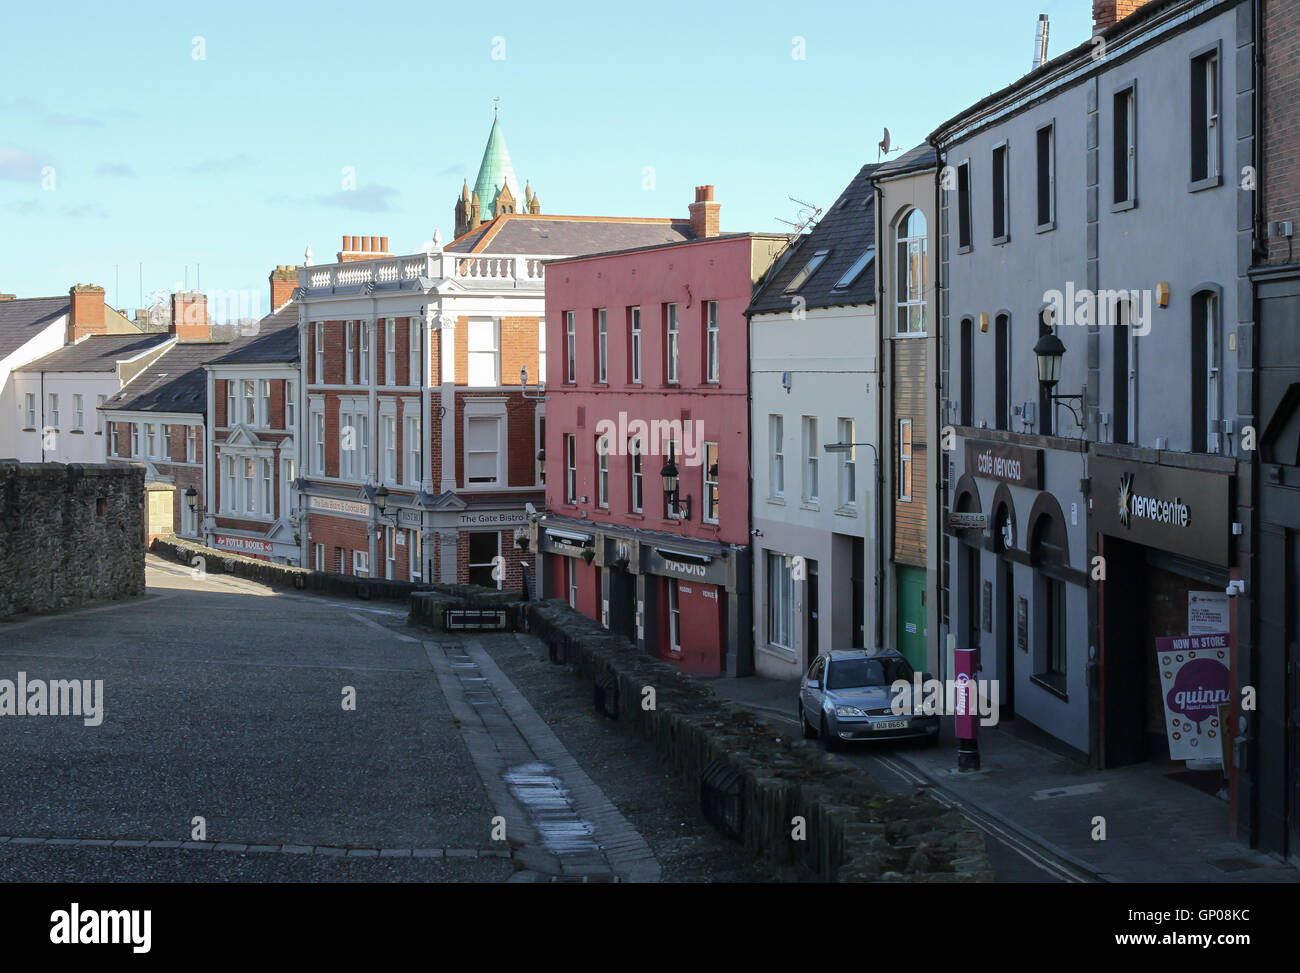 Ansicht der Magazine Street Abschnitt der Stadtmauer in Derry. Magazine Street befindet sich innerhalb der Mauern von Derry. Stockfoto